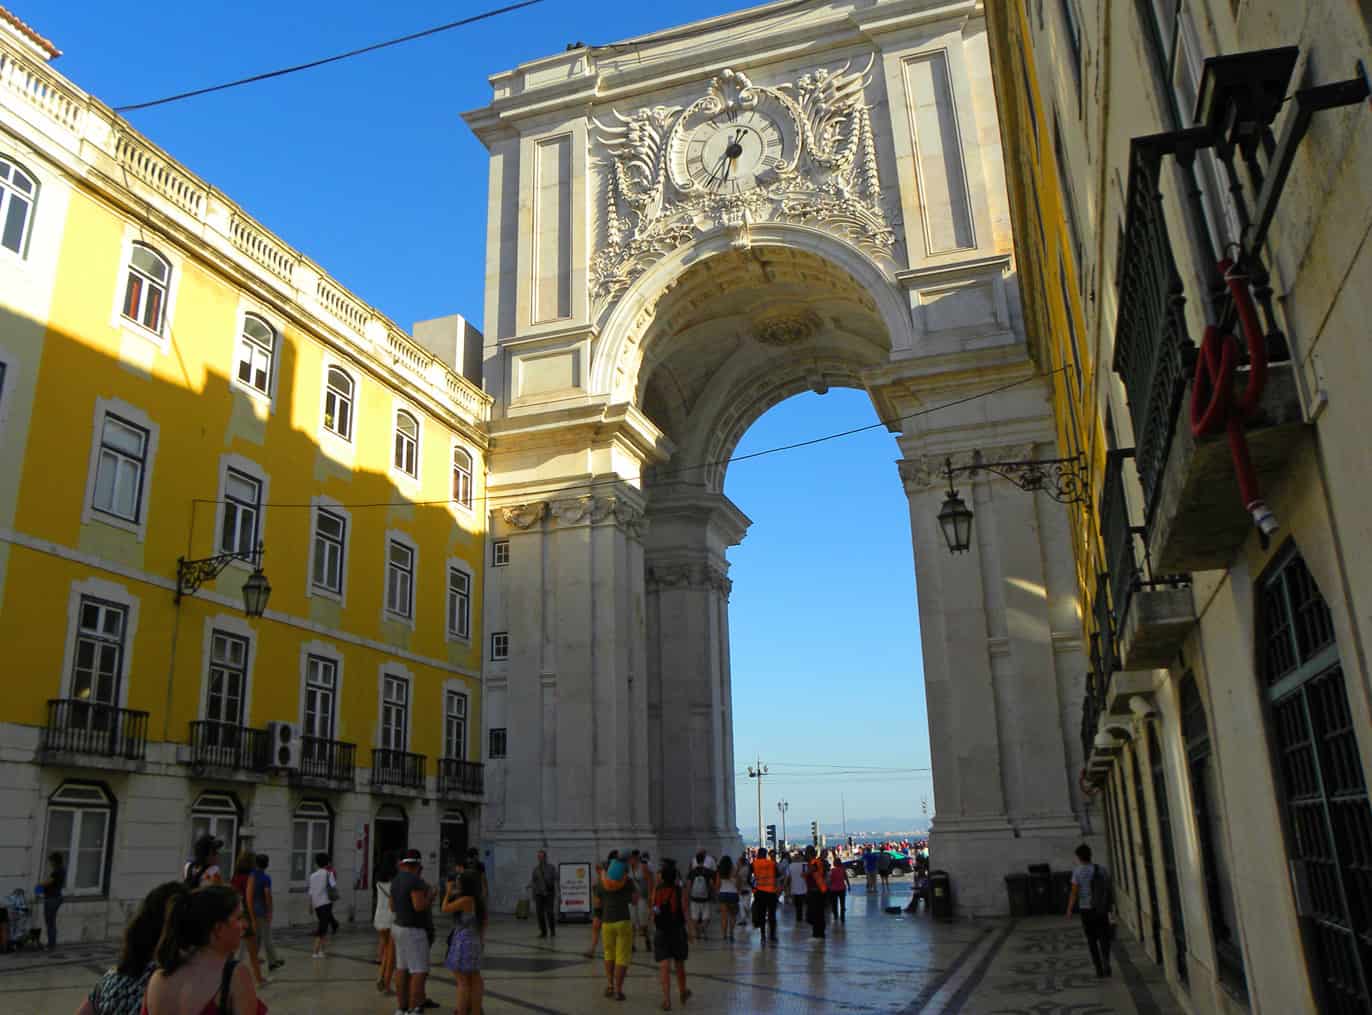 Praça do Comércio and the Arco da Rua Augusta, Lisbon